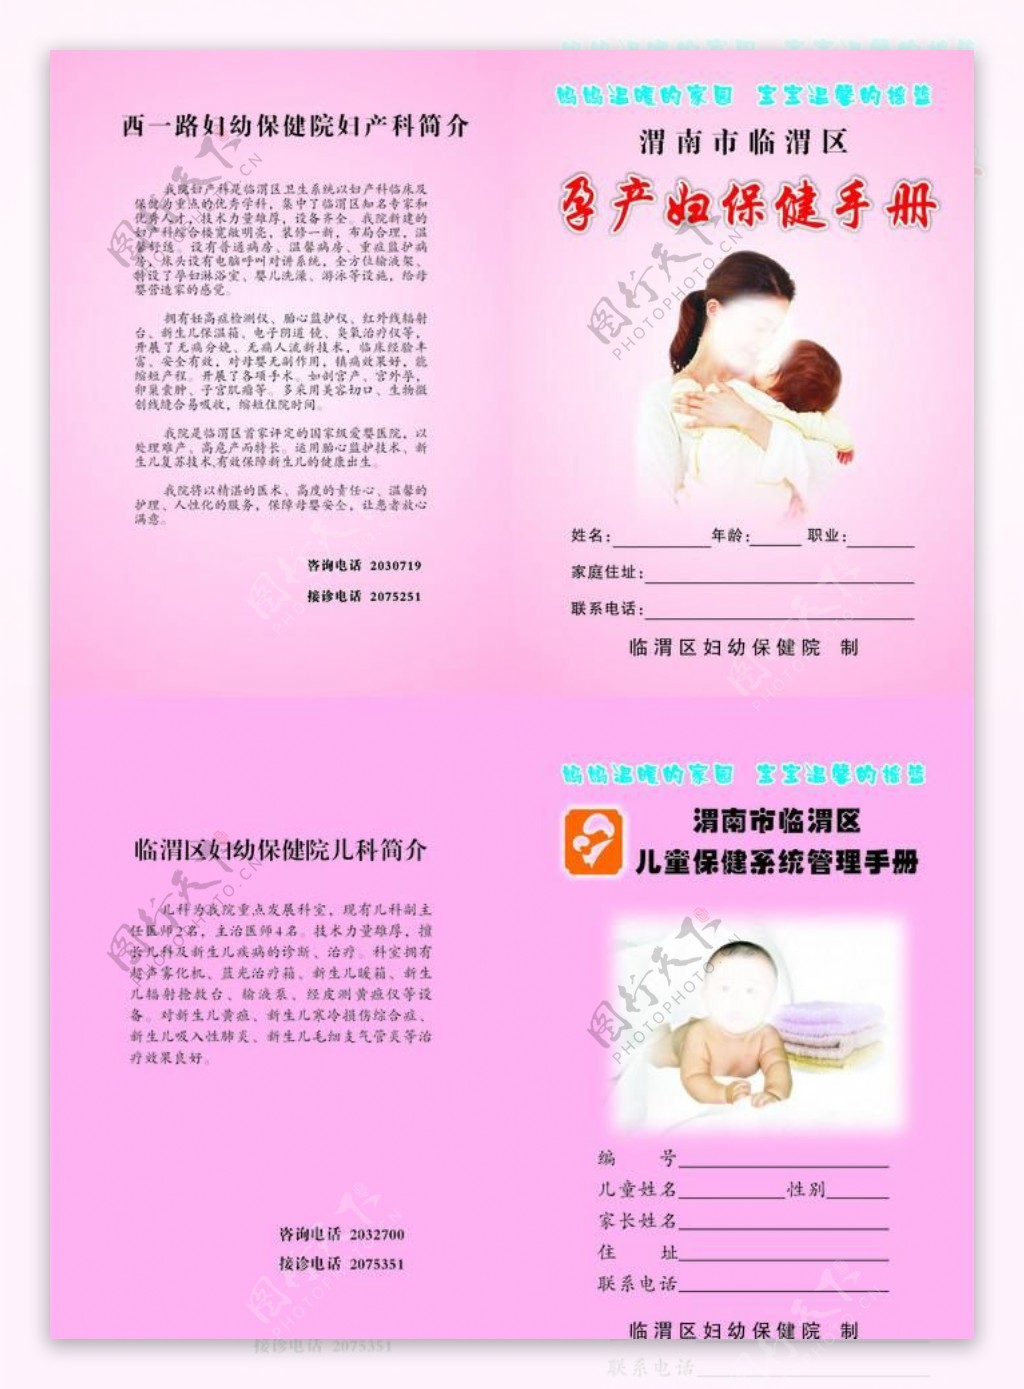 妇女儿童保健手册封面图片